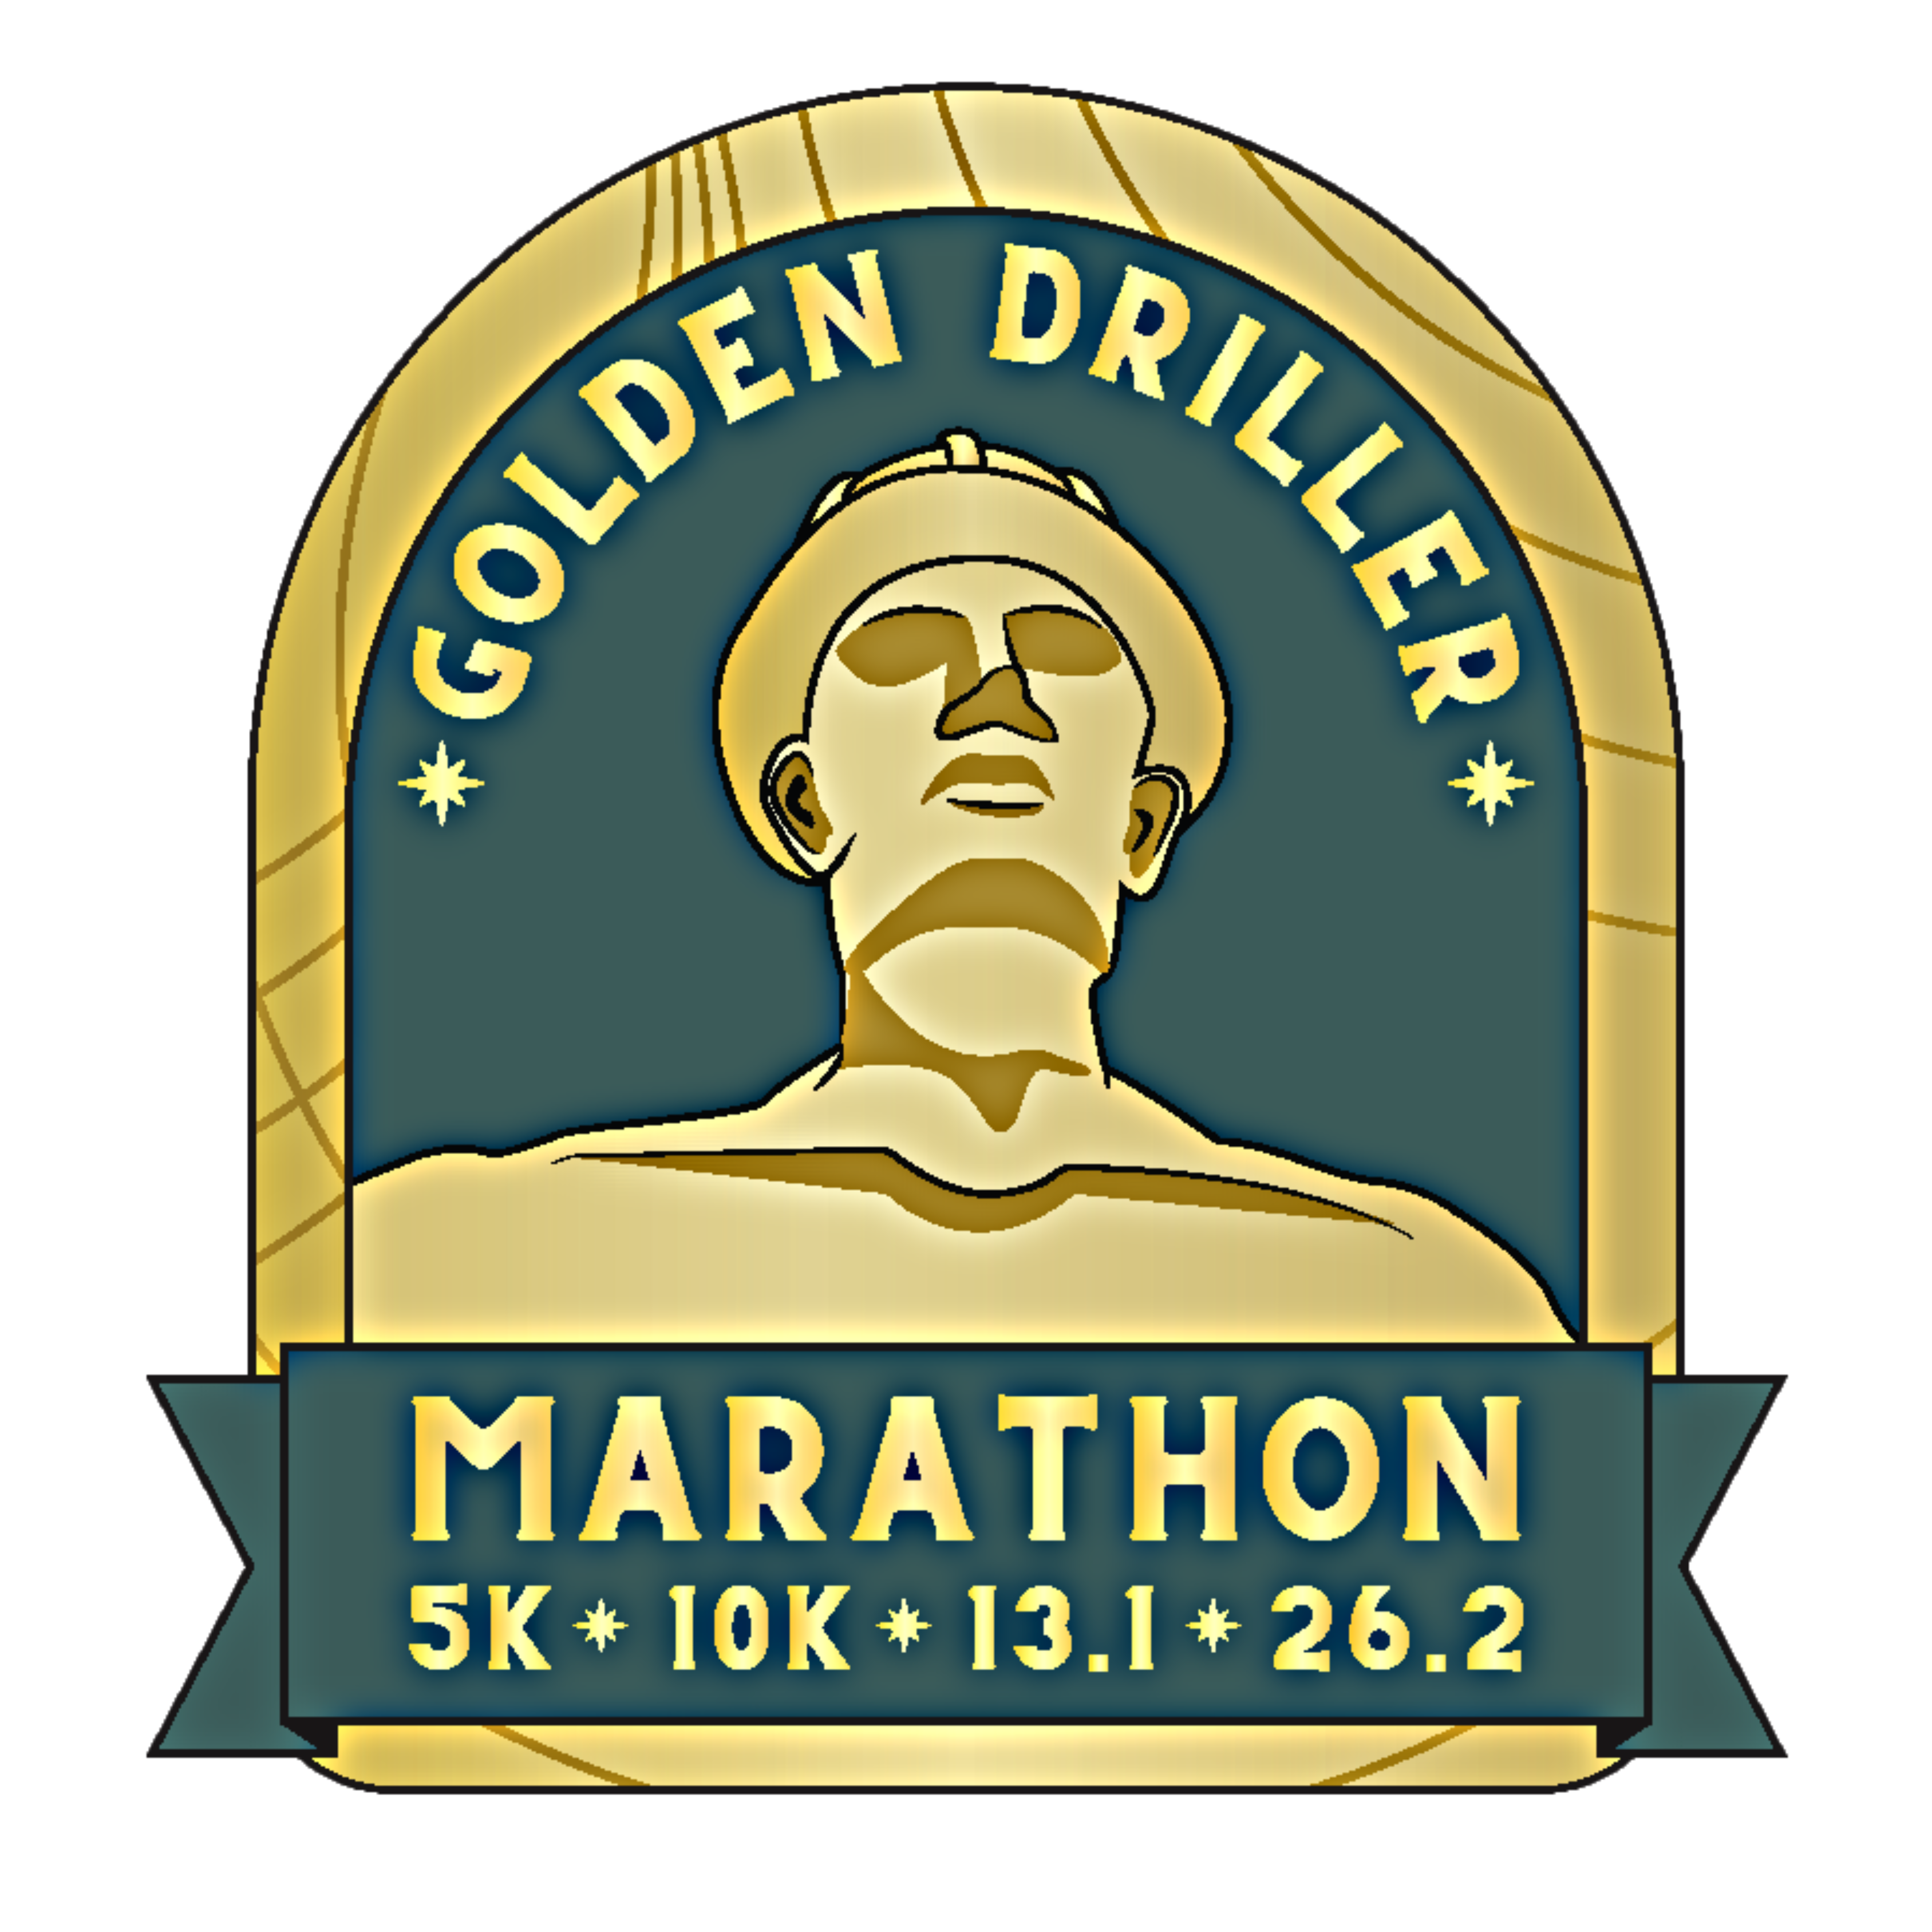 Golden Driller Marathon logo on RaceRaves